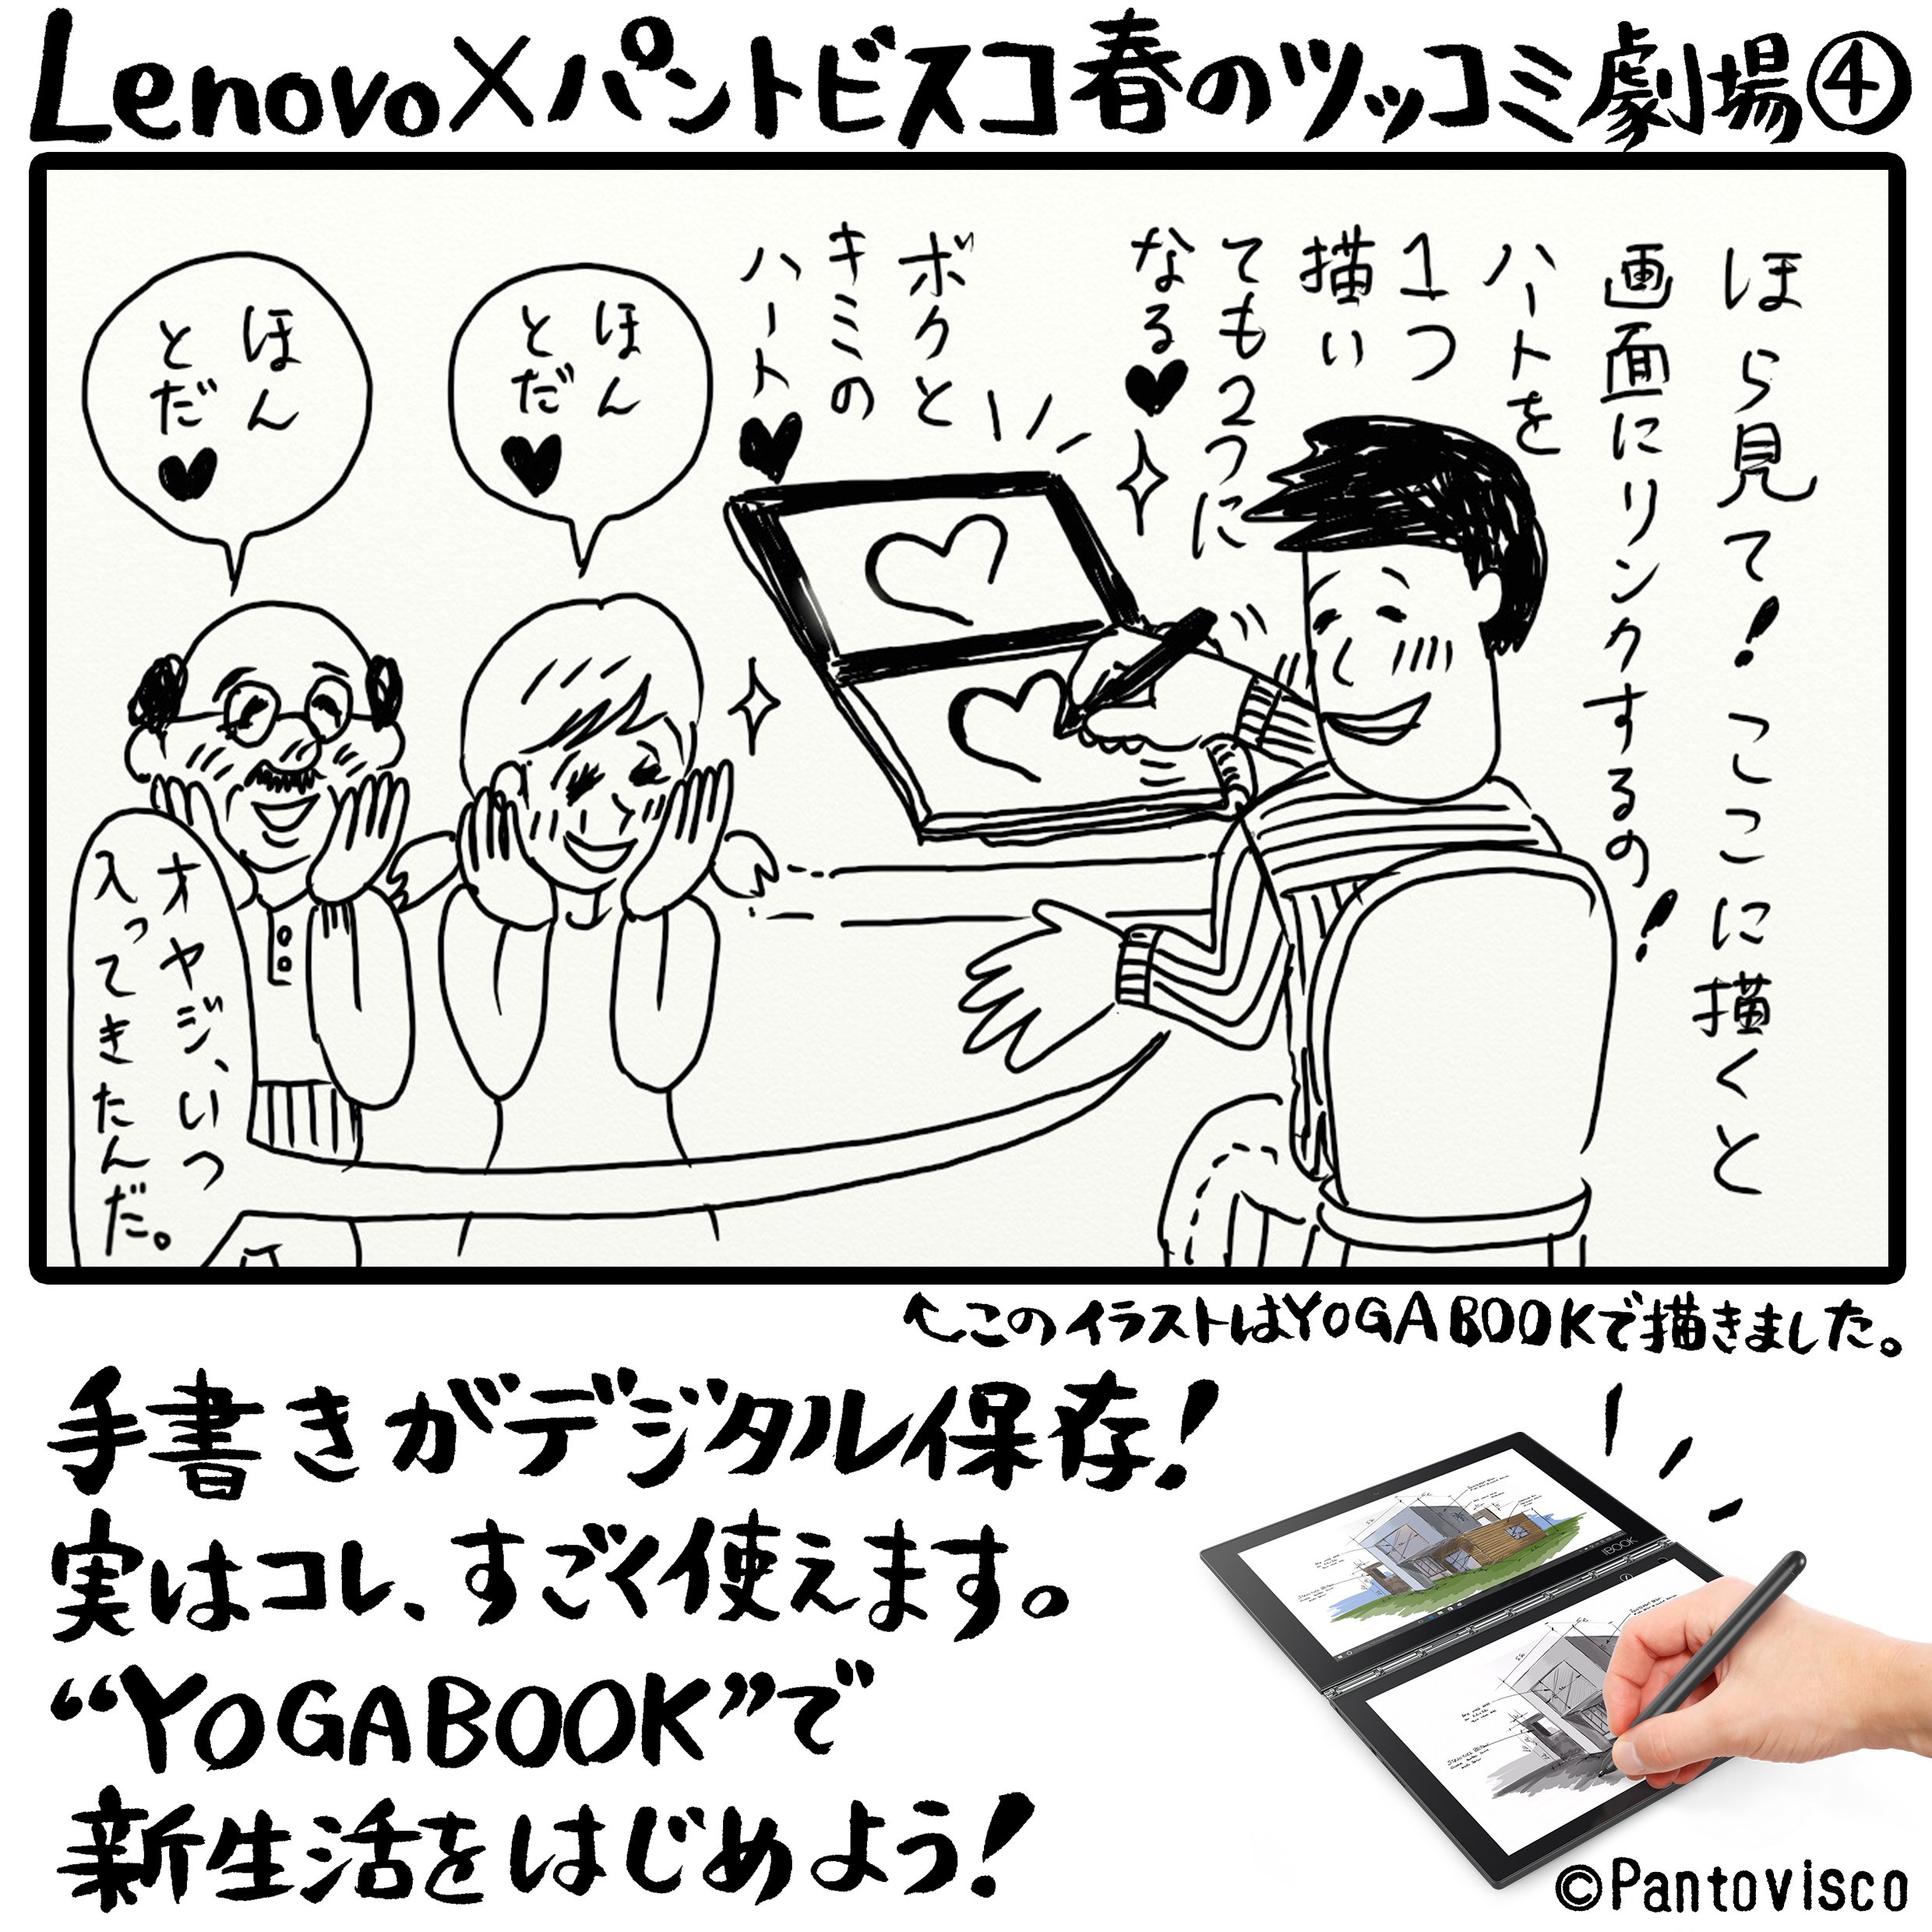 Lenovo Japan Lenovo パントビスコ 春のツッコミ劇場 その４ オヤジ邪魔するな 一人暮らし 彼氏の家 付き合う ないない Yogabook Yogabookでイラスト描いてみた T Co Mmgmhbwnyj Twitter